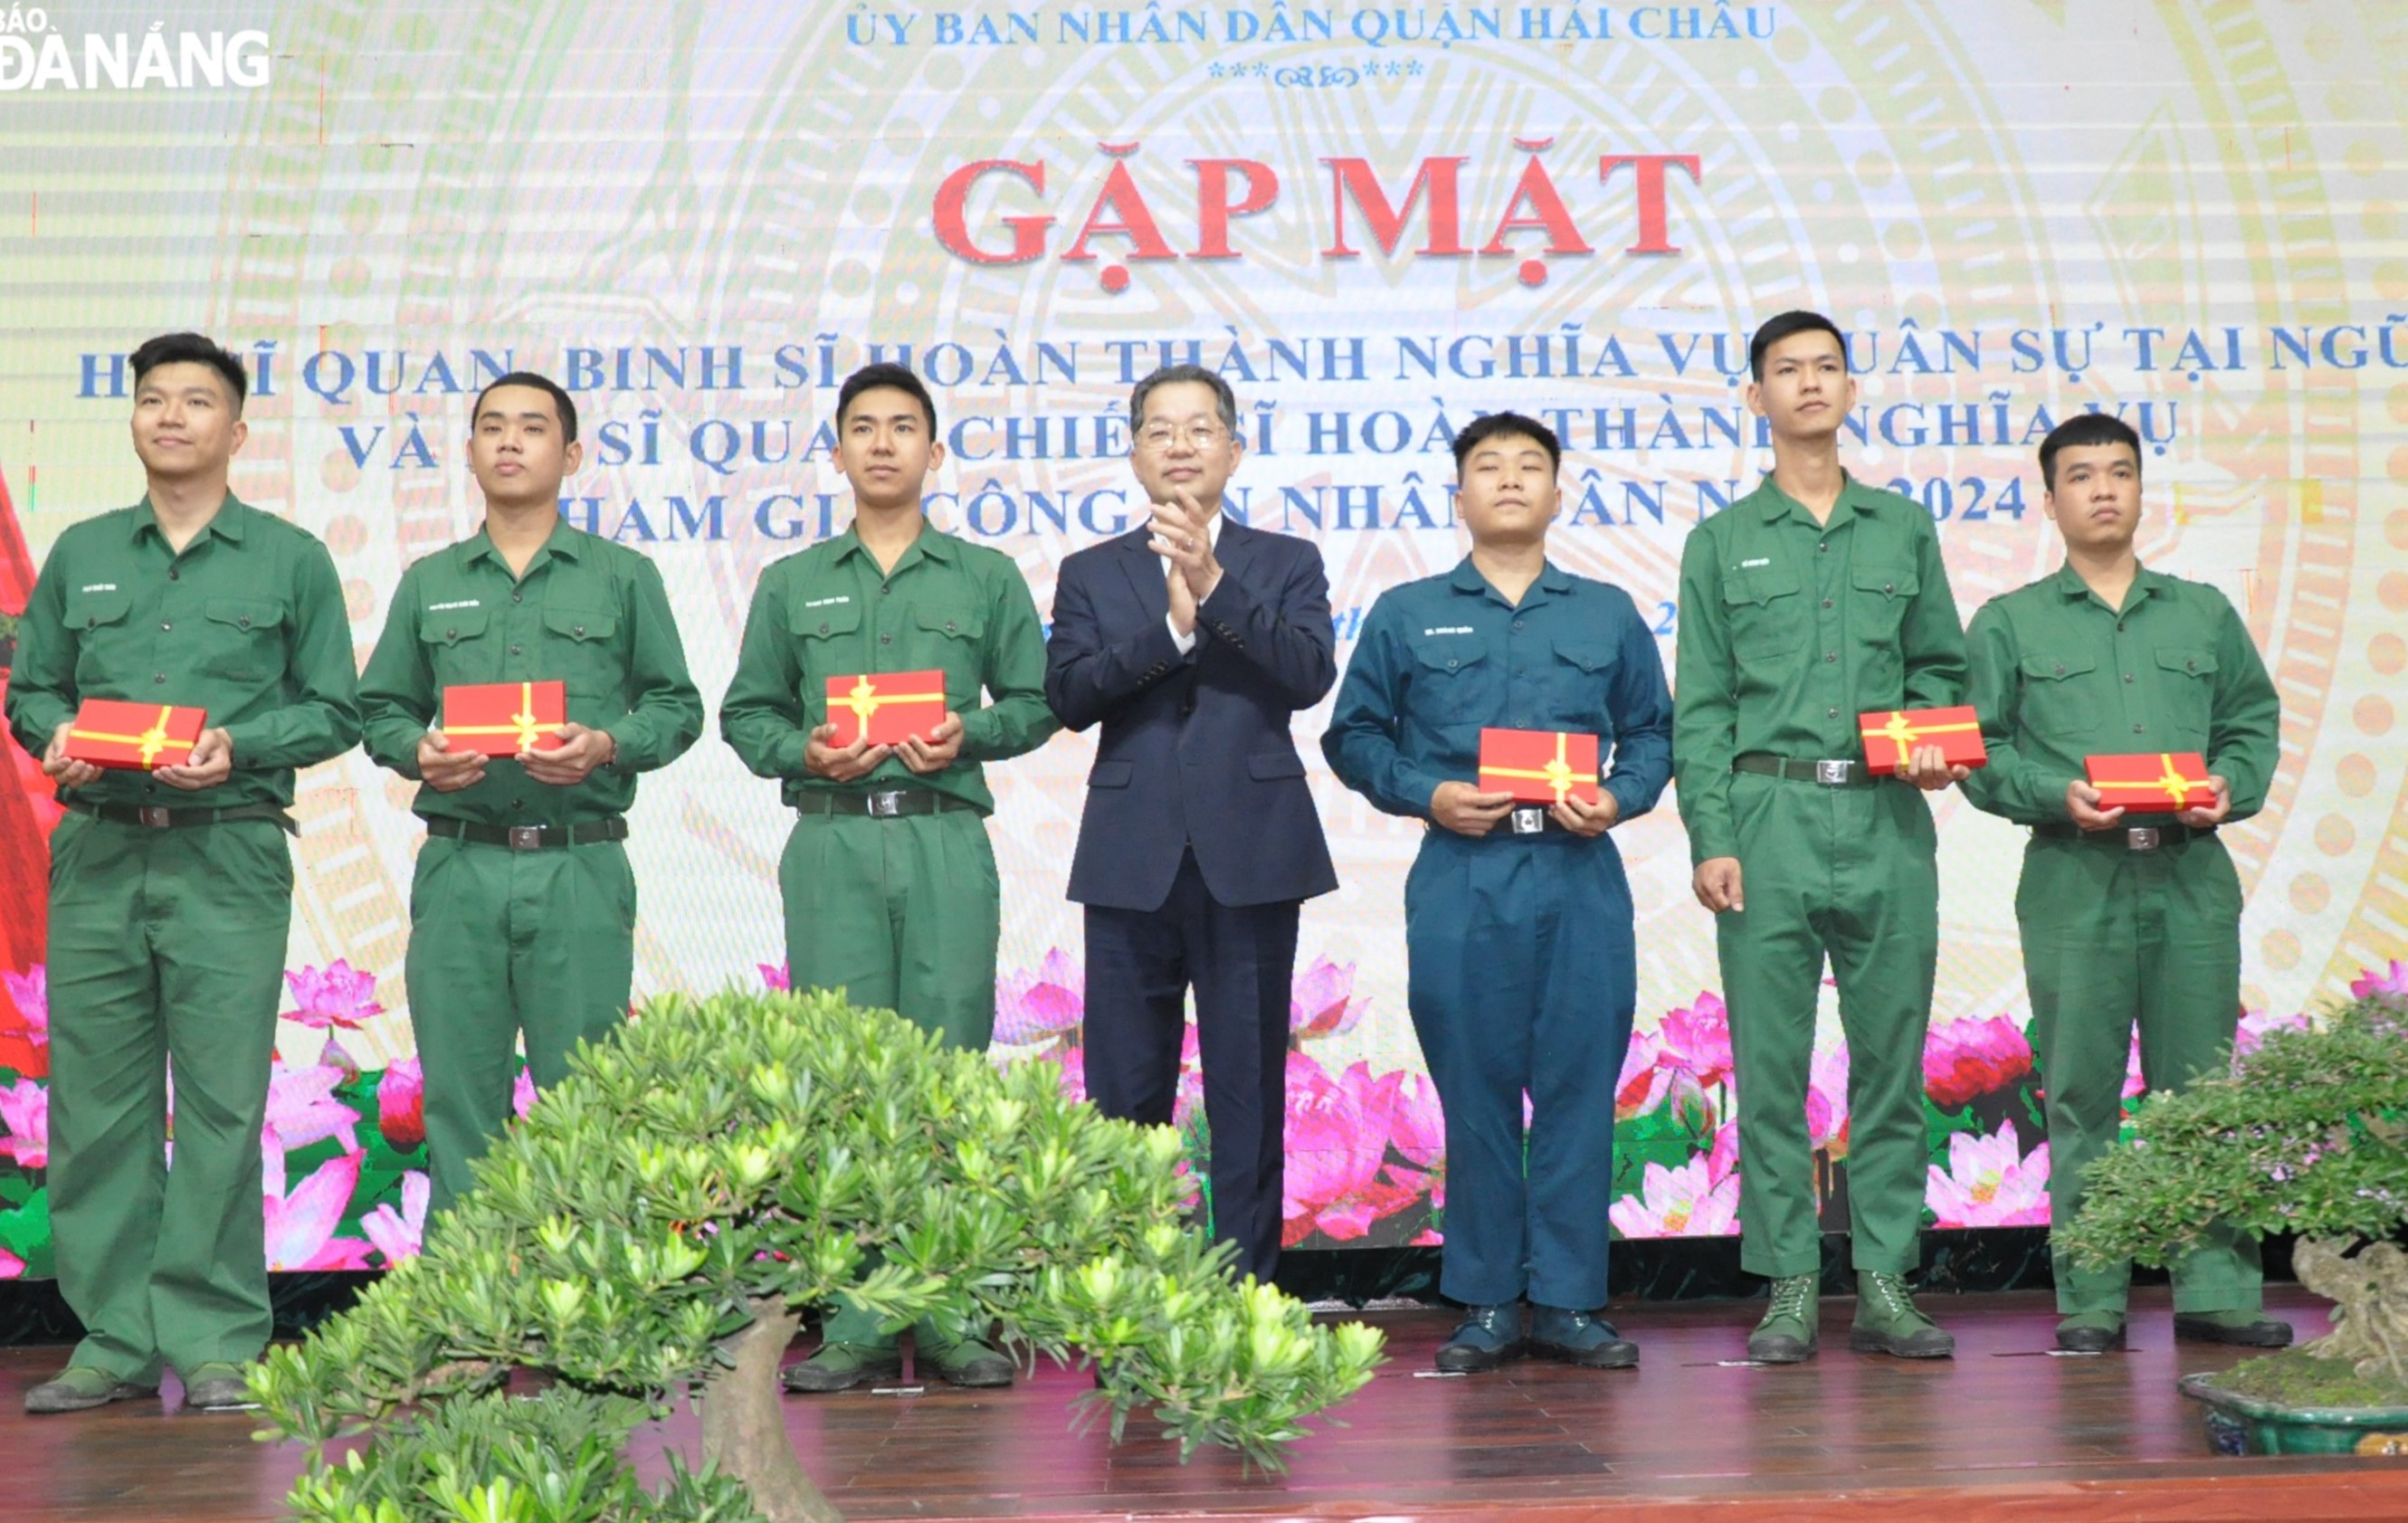 Bí thư Thành ủy Nguyễn Văn Quảng (giữa) tặng quà của UBND thành phố cho các quân nhân xuất ngũ. Ảnh: LÊ HÙNG